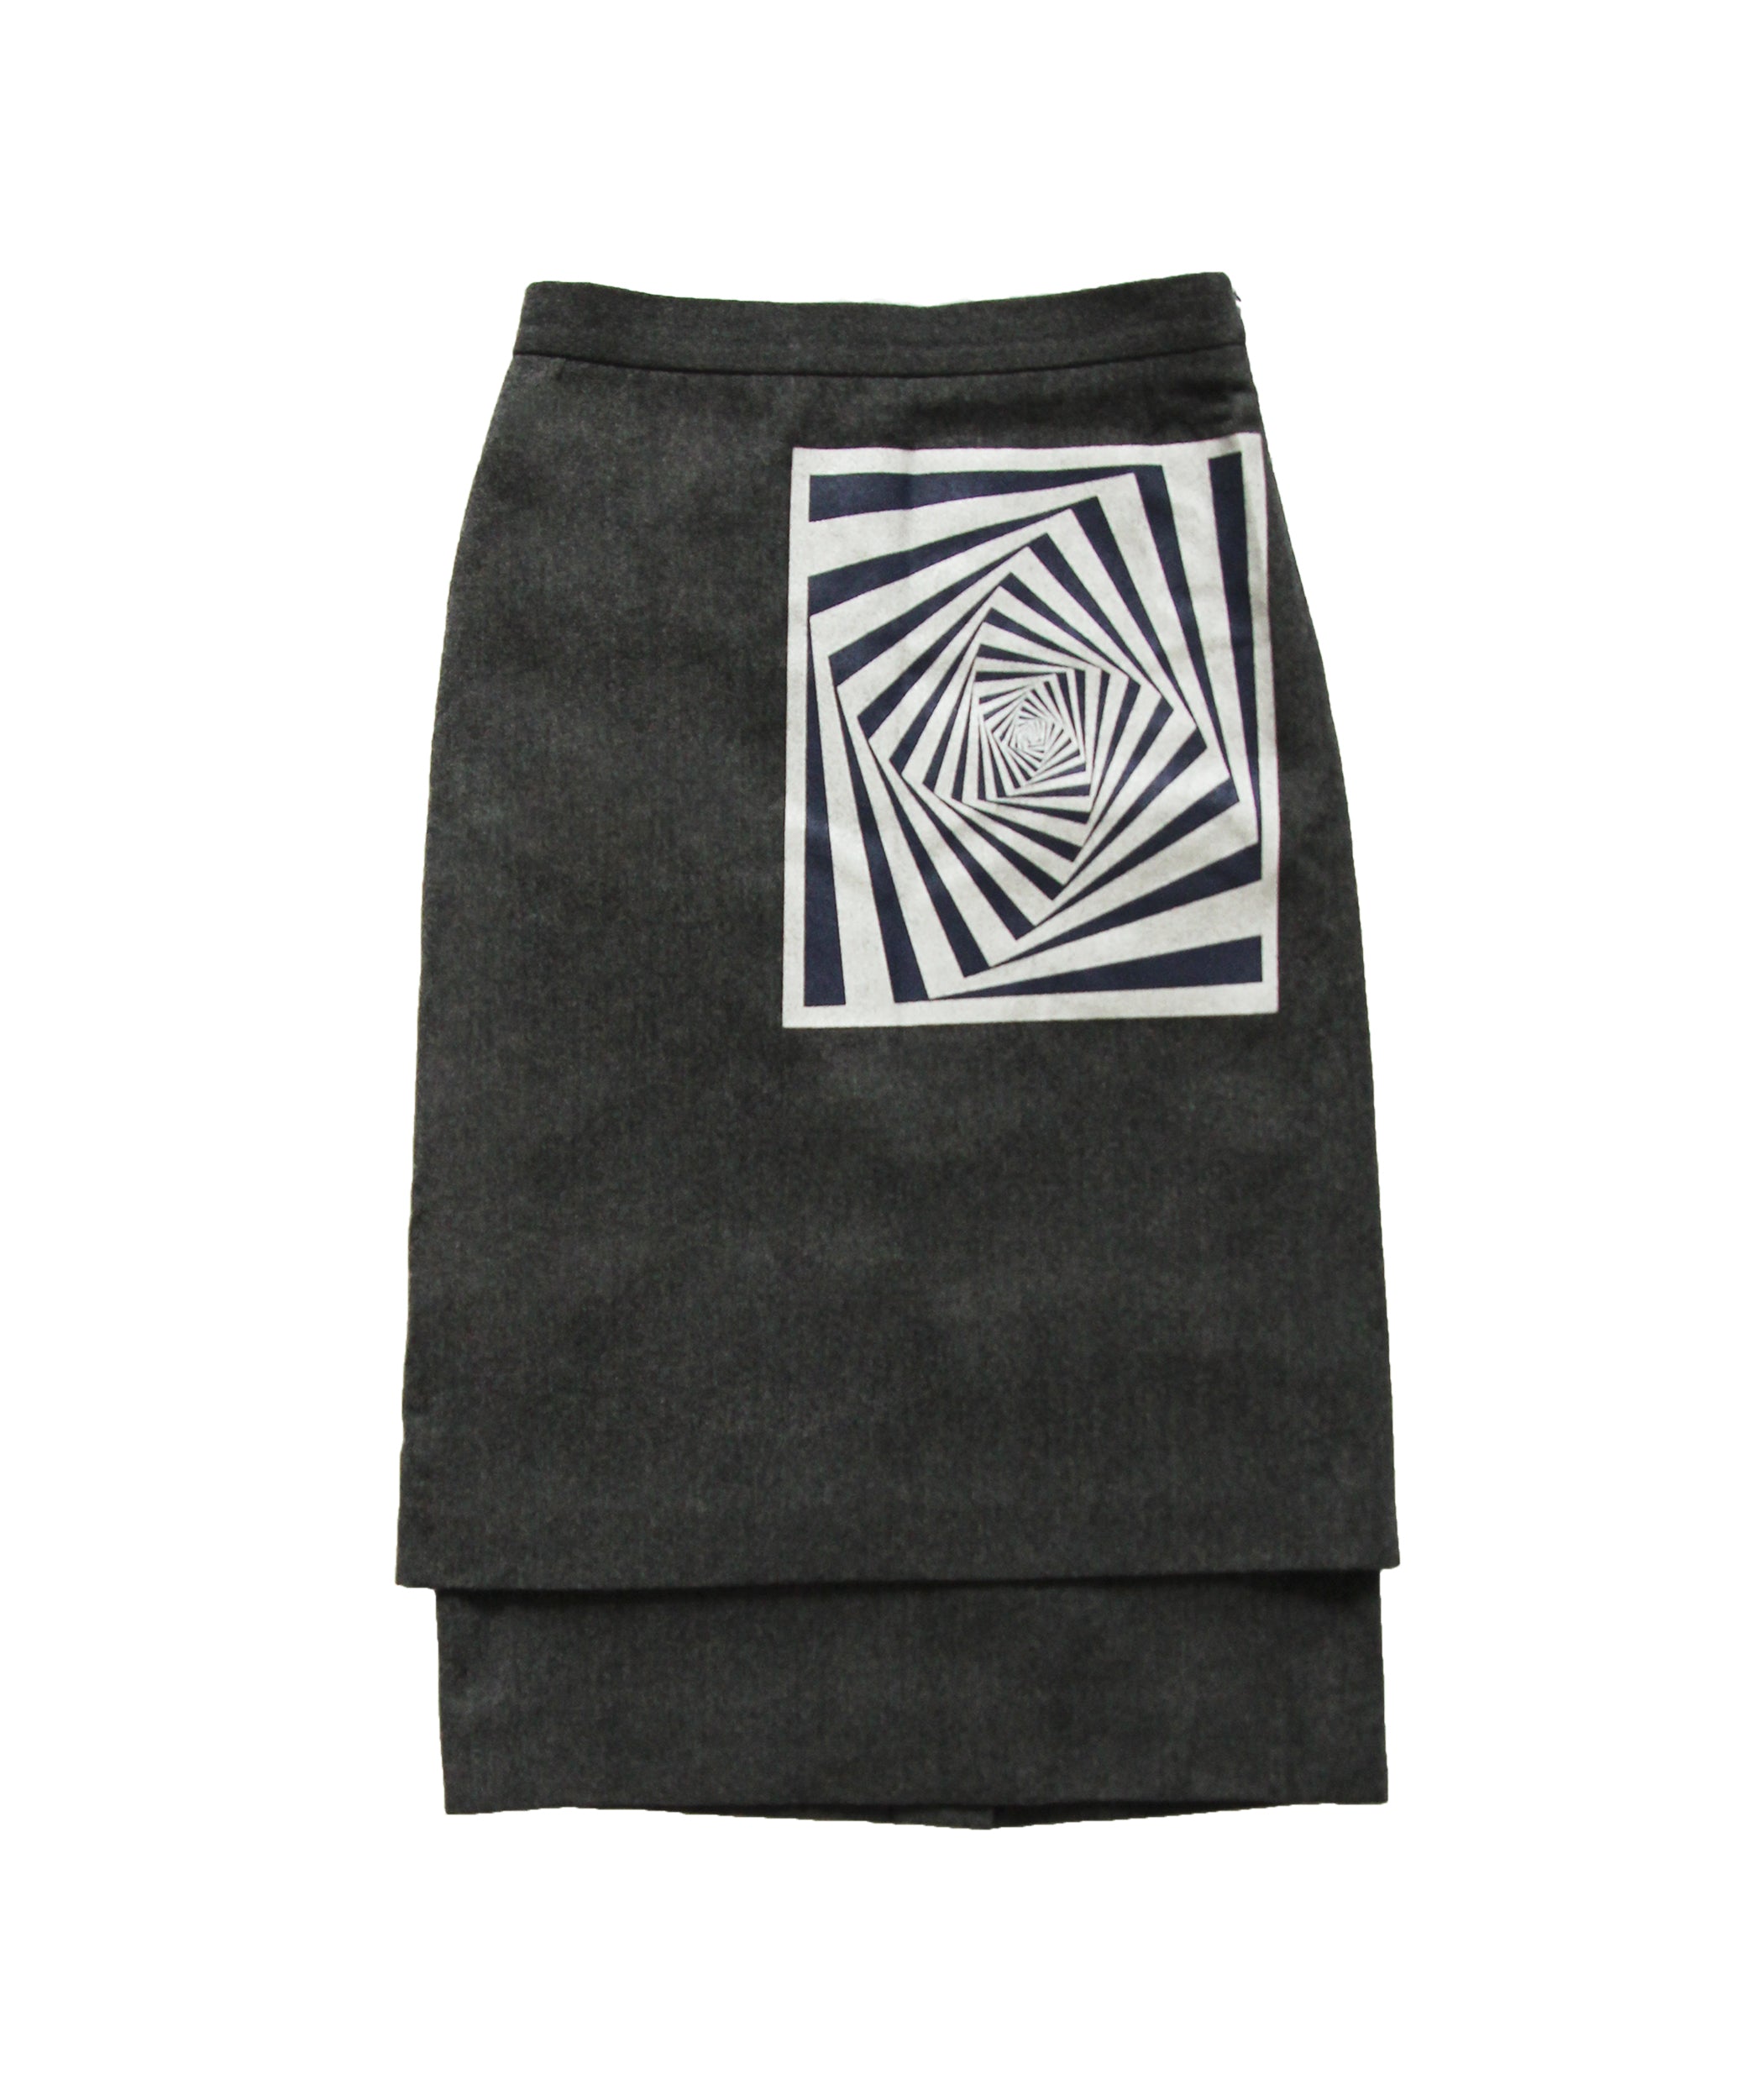 DRIES VAN NOTEN FW 2014 Double-Layered Illusion Skirt S